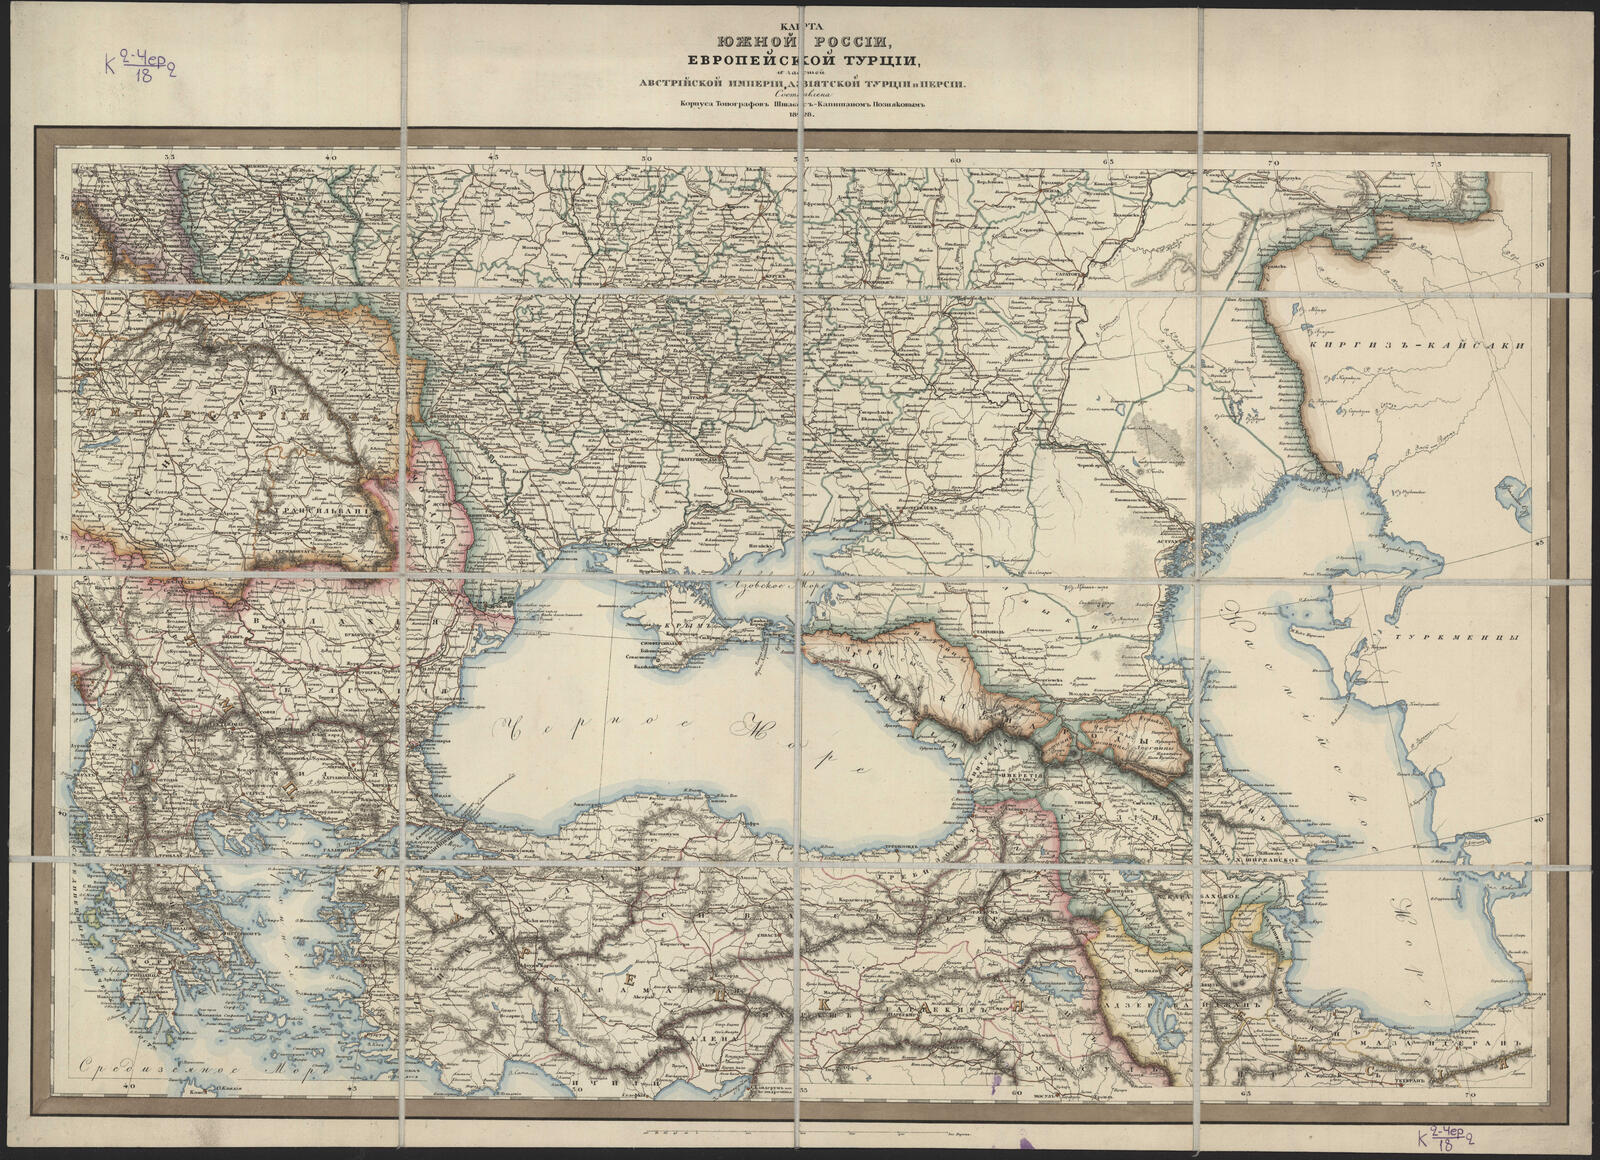 Изображение Карта южной России, Европейской Турции и частей Австрийской империи, Азиатской Турции и Персии